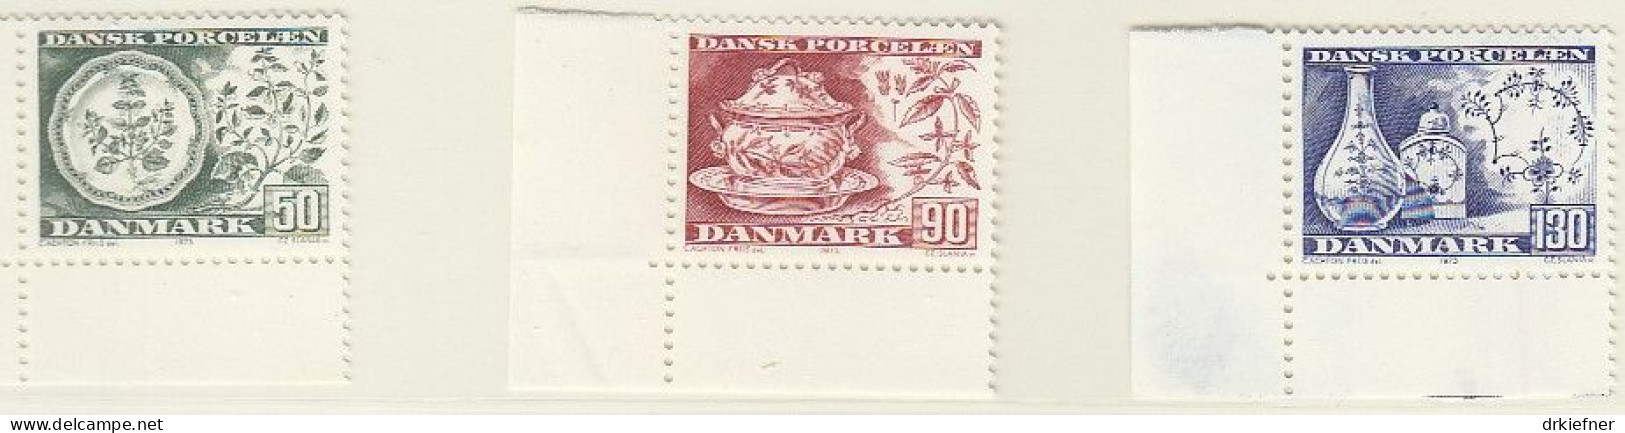 DÄNEMARK  589-591, Postfrisch **, Dänisches Porzellan, 1975 - Unused Stamps